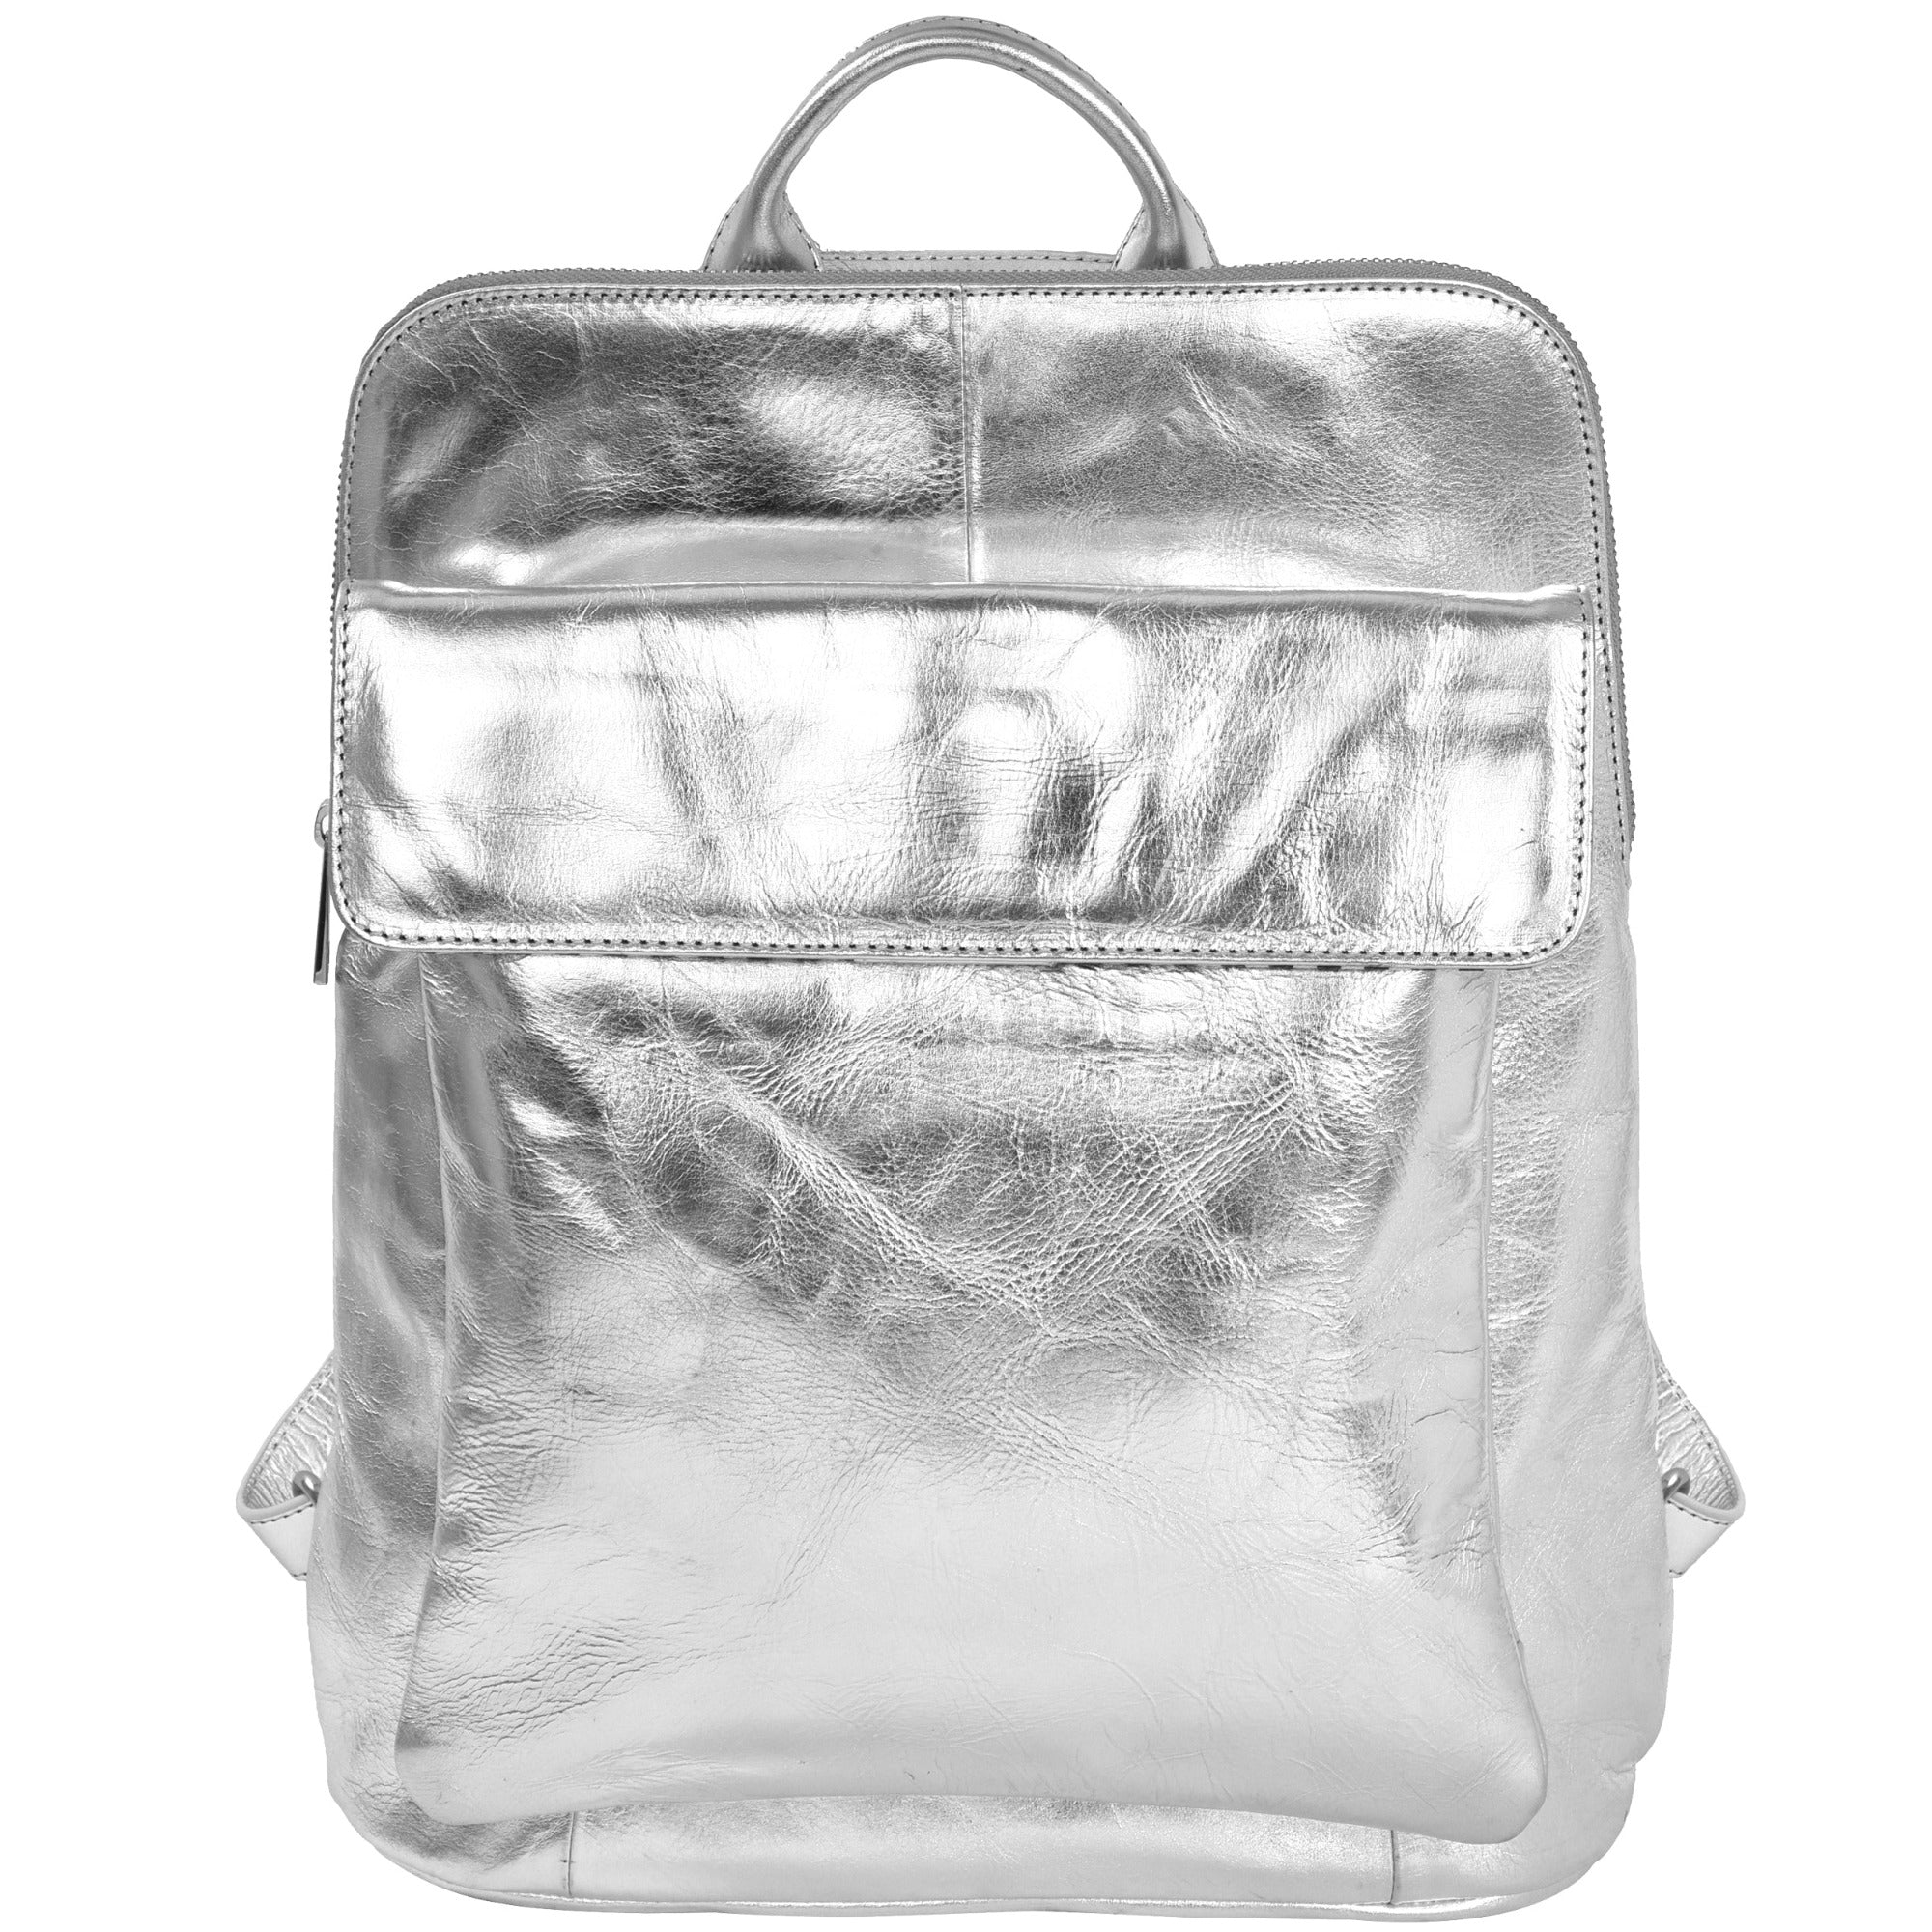 silverleatherbackpack.jpg